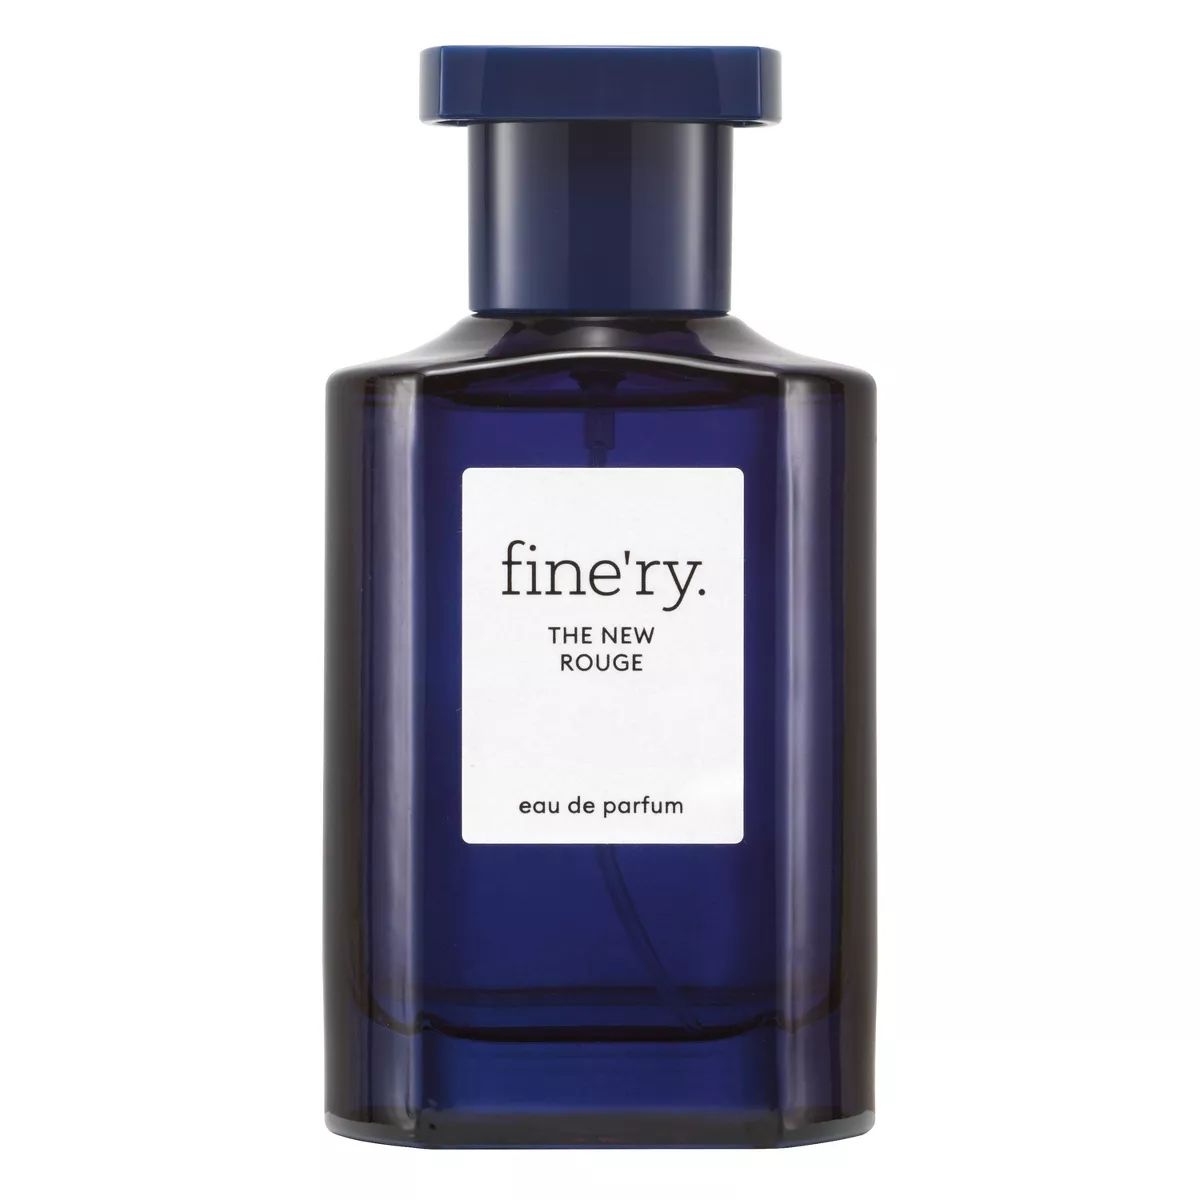 fine'ry. Women's Eau de Parfum Perfume - The New Rouge - 2 fl oz | Target